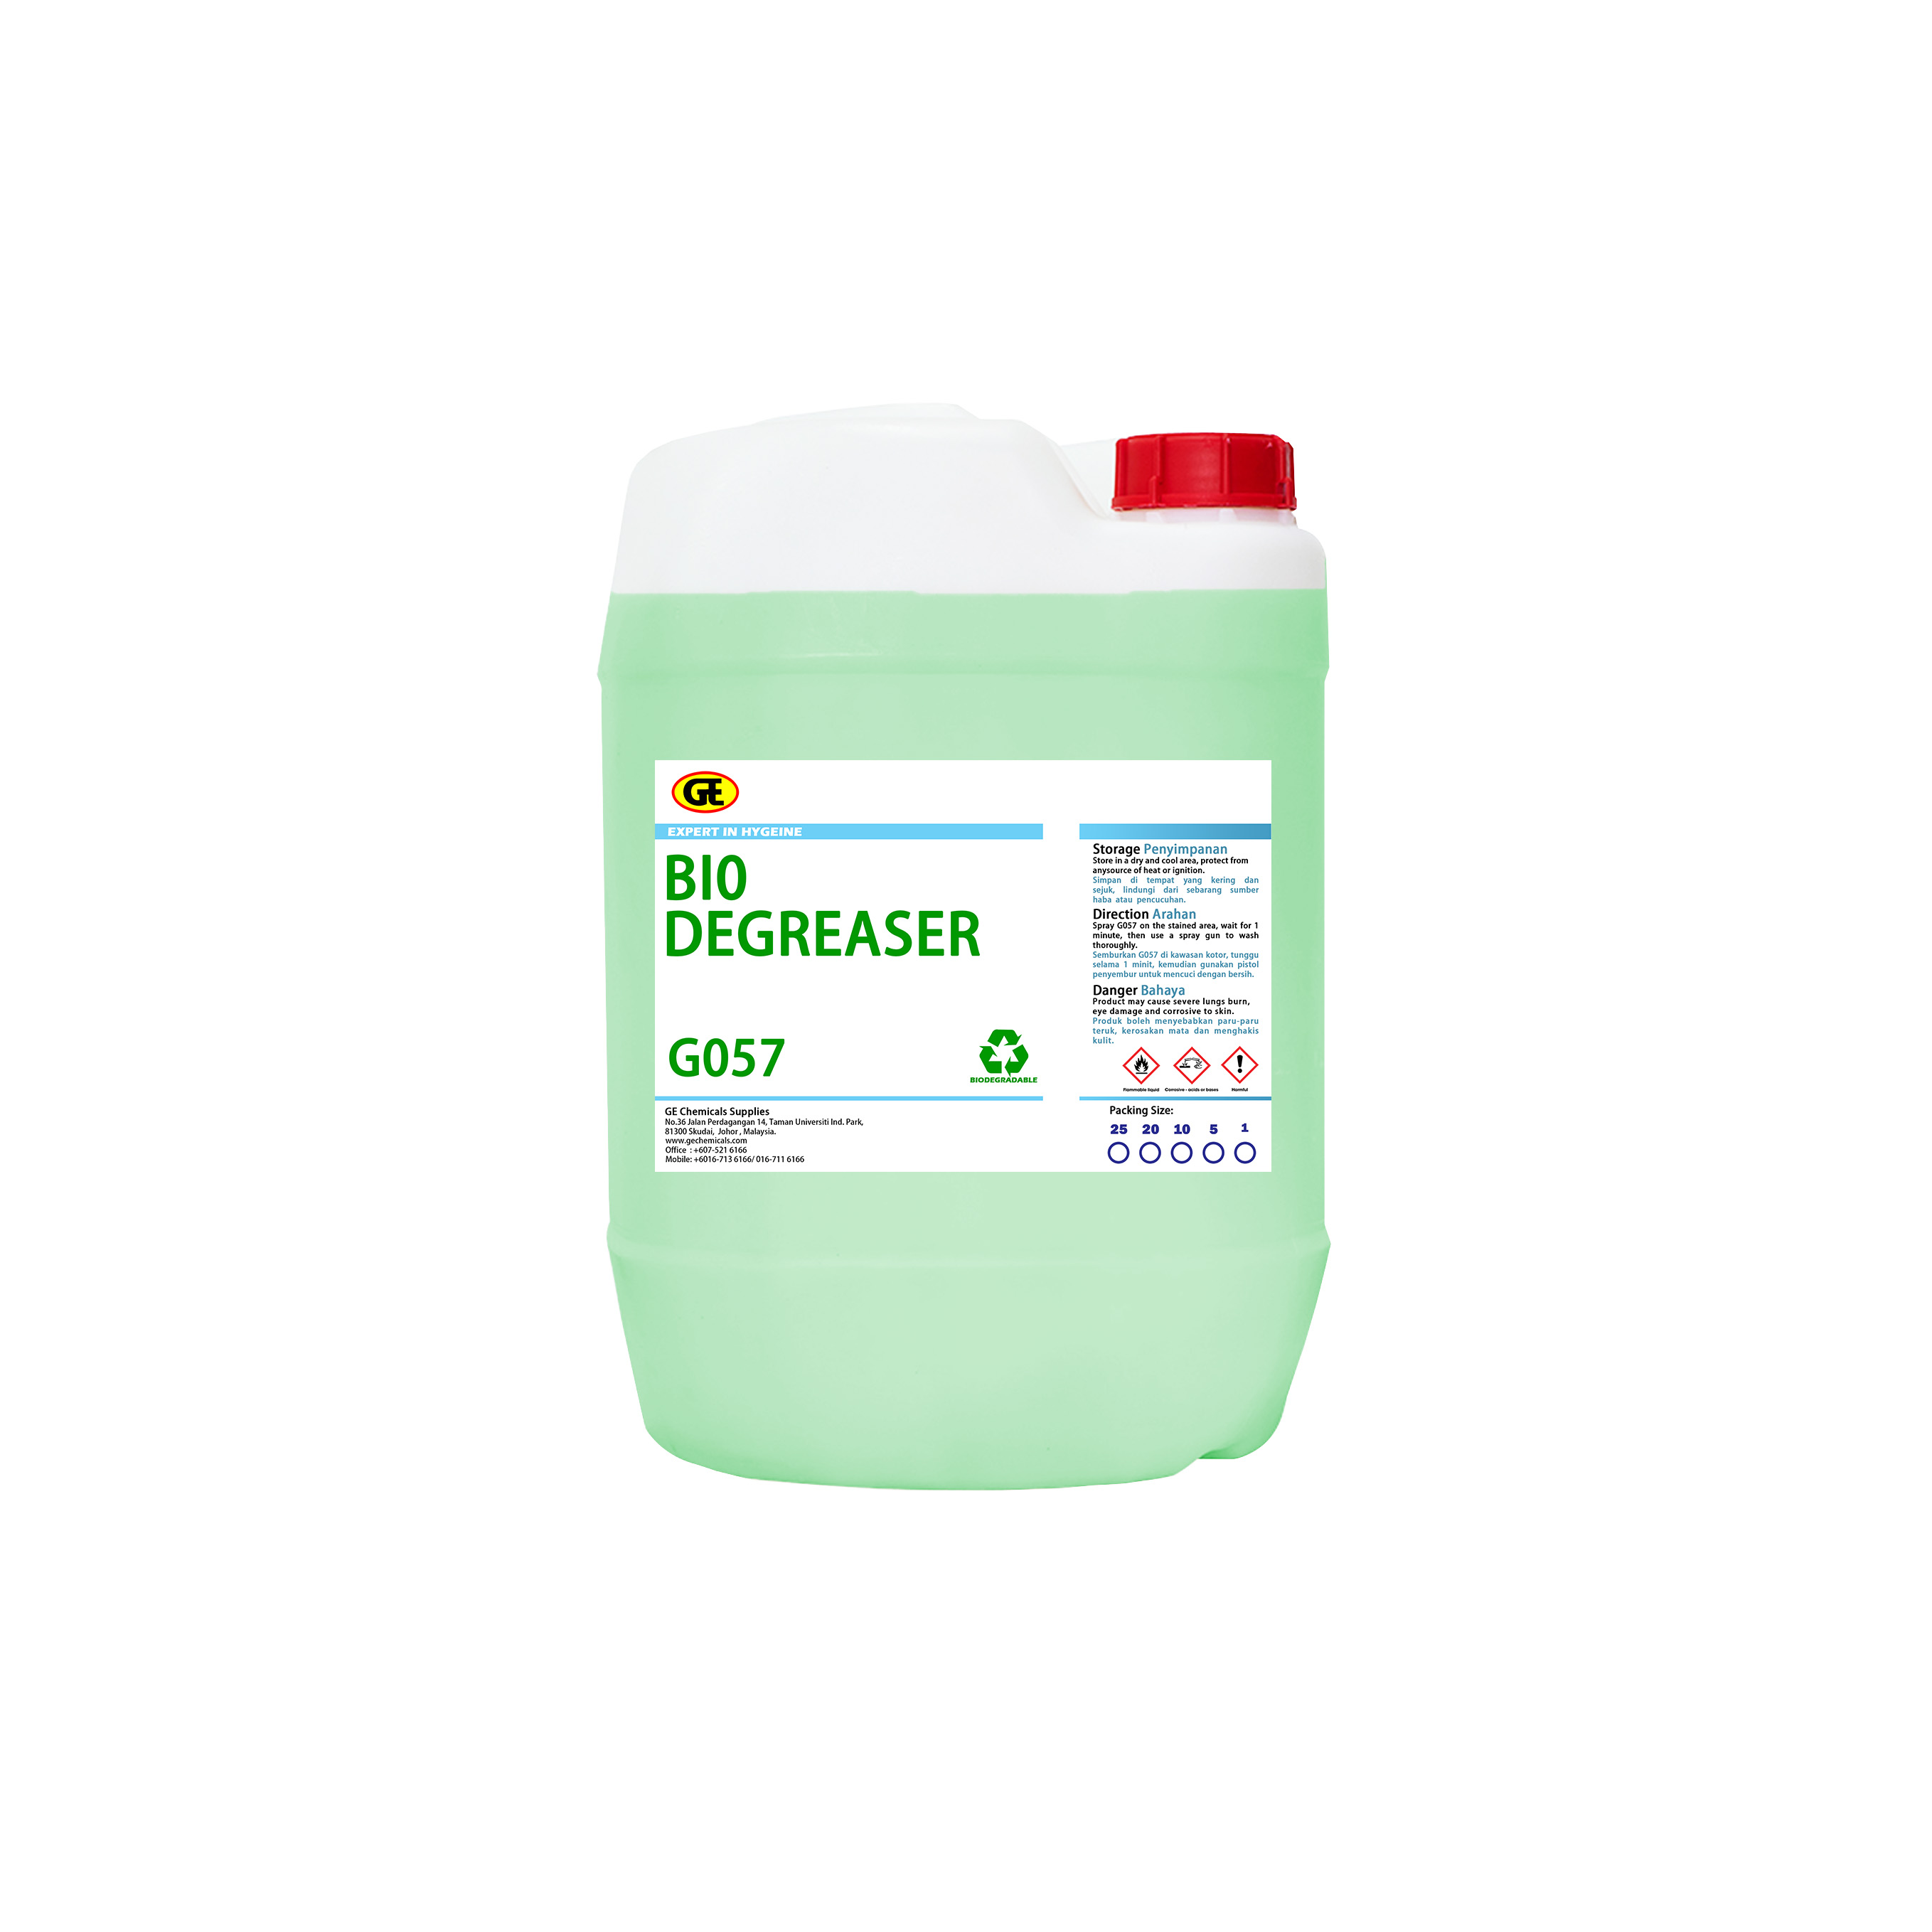 Biodegradable Degreaser